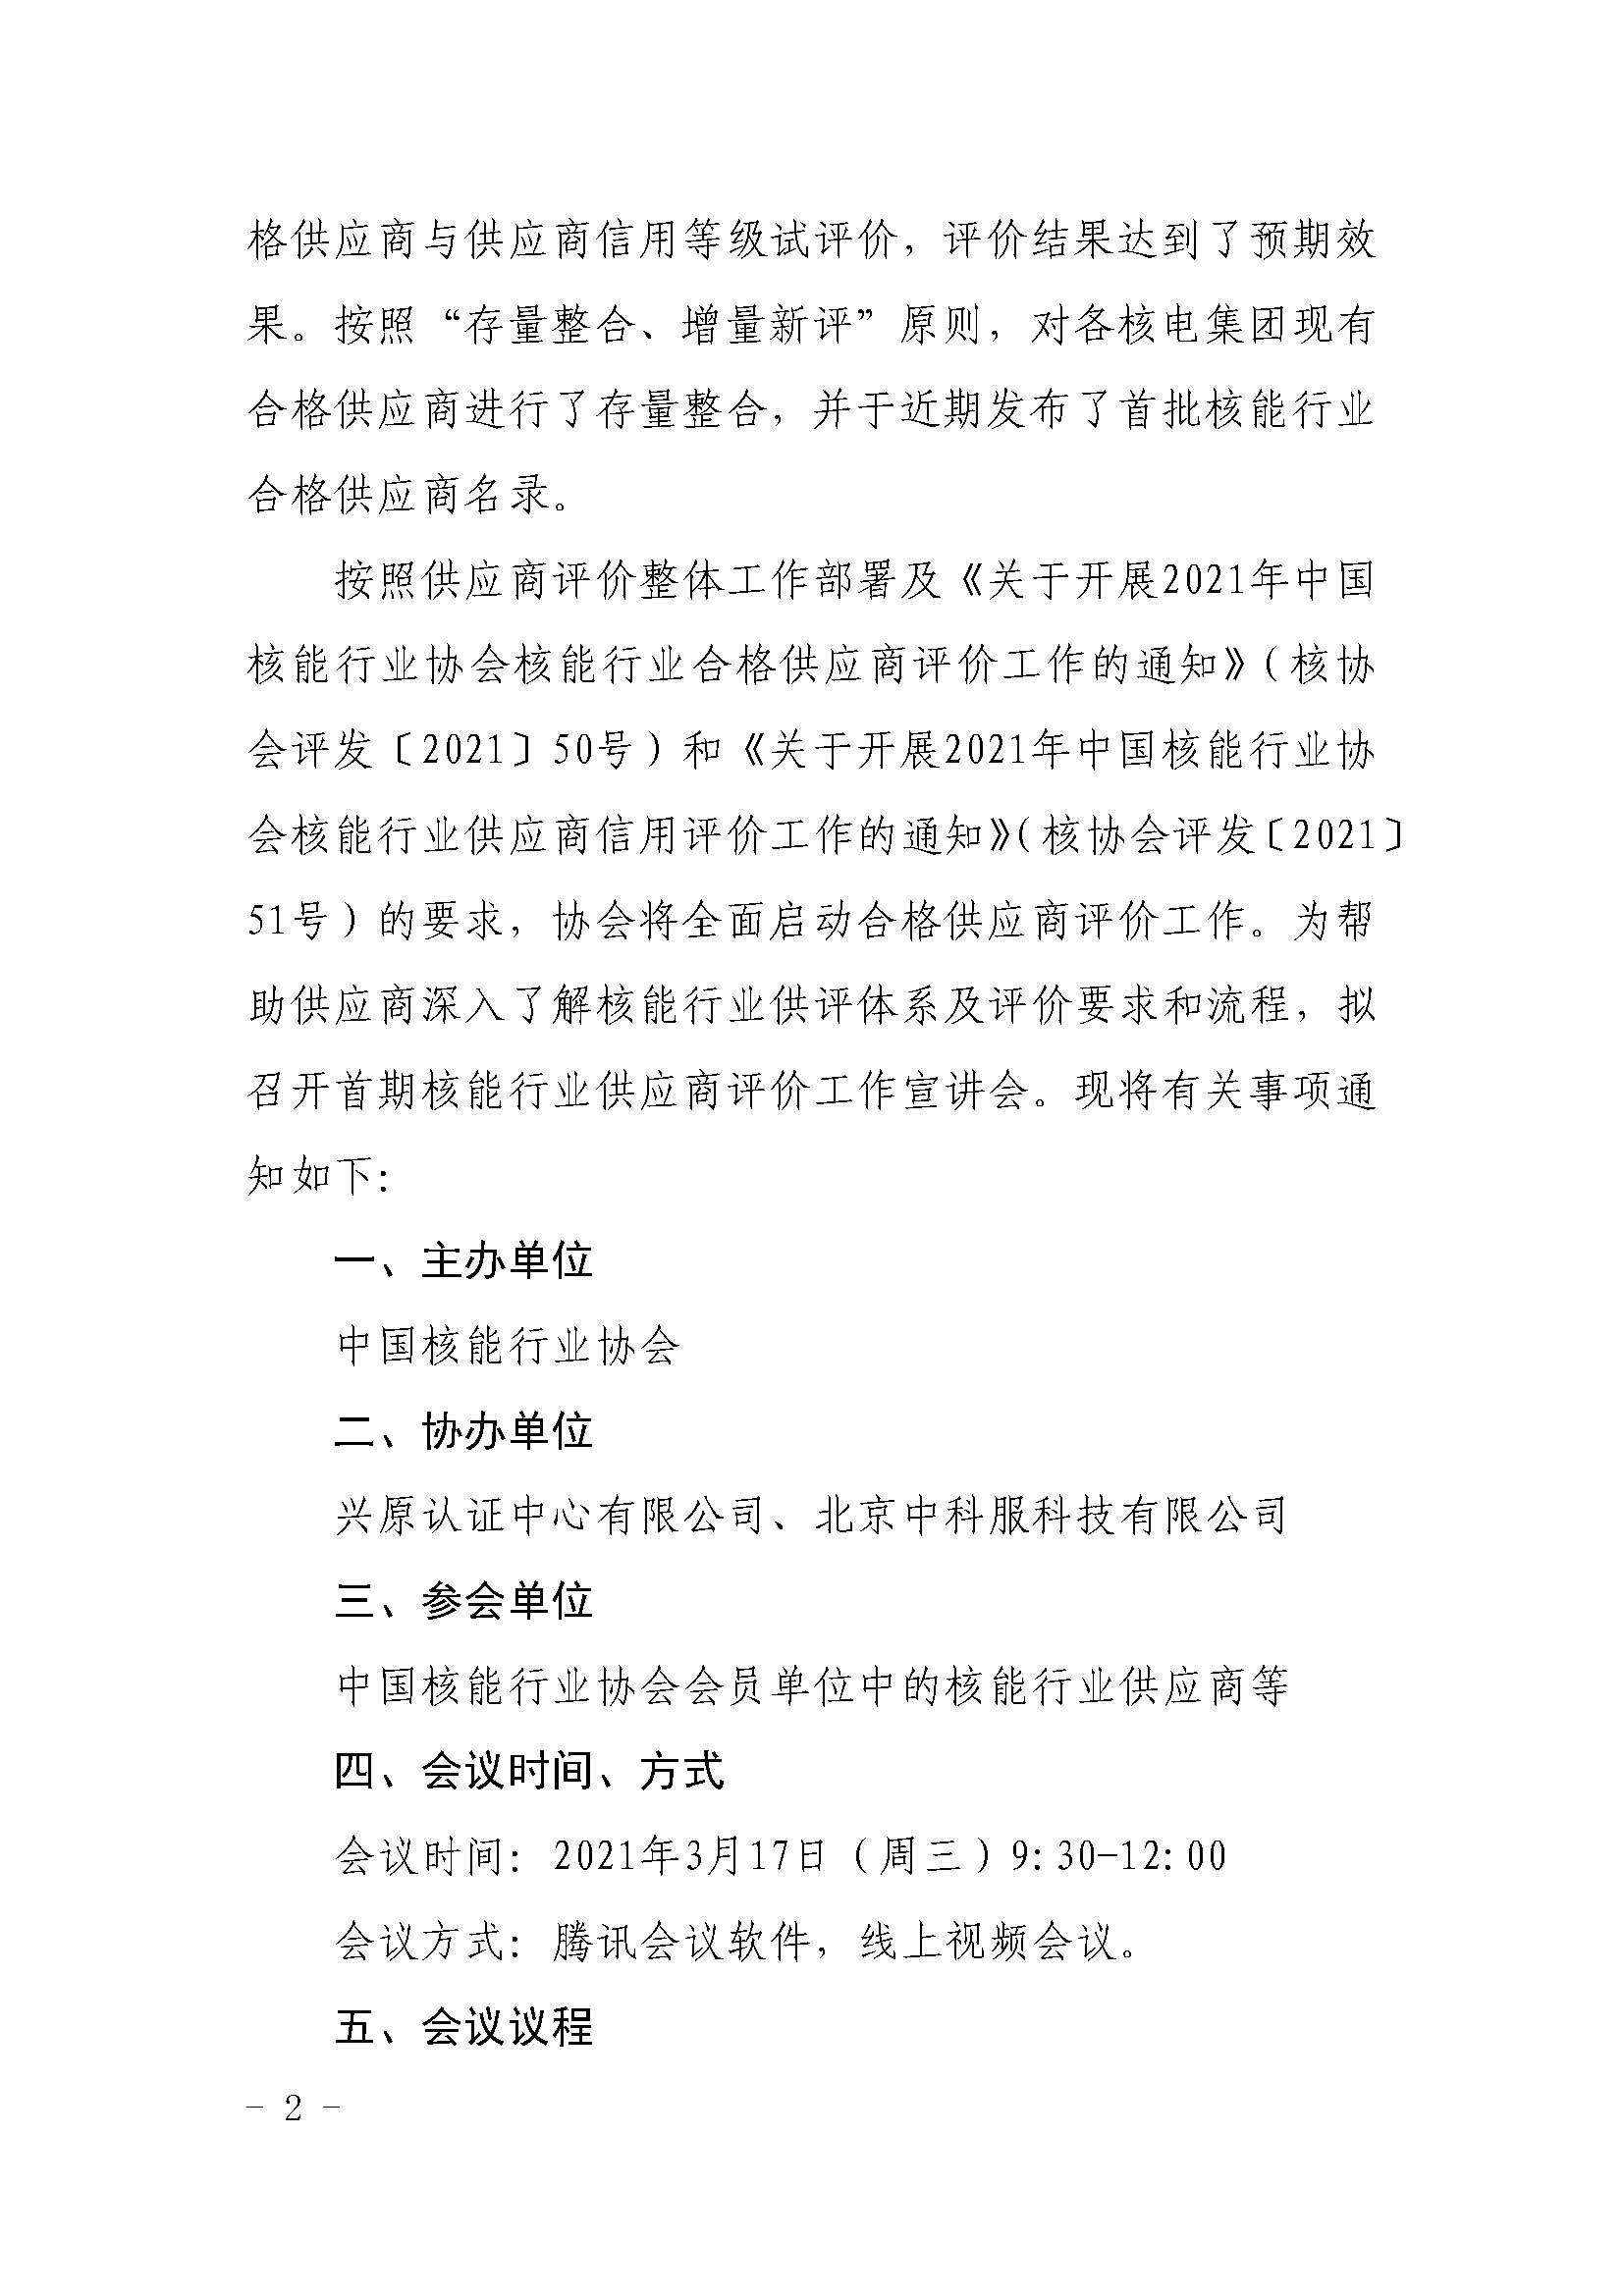 关于召开中国核能行业协会供应商评价宣讲会的通知3.4_页面_2.jpg